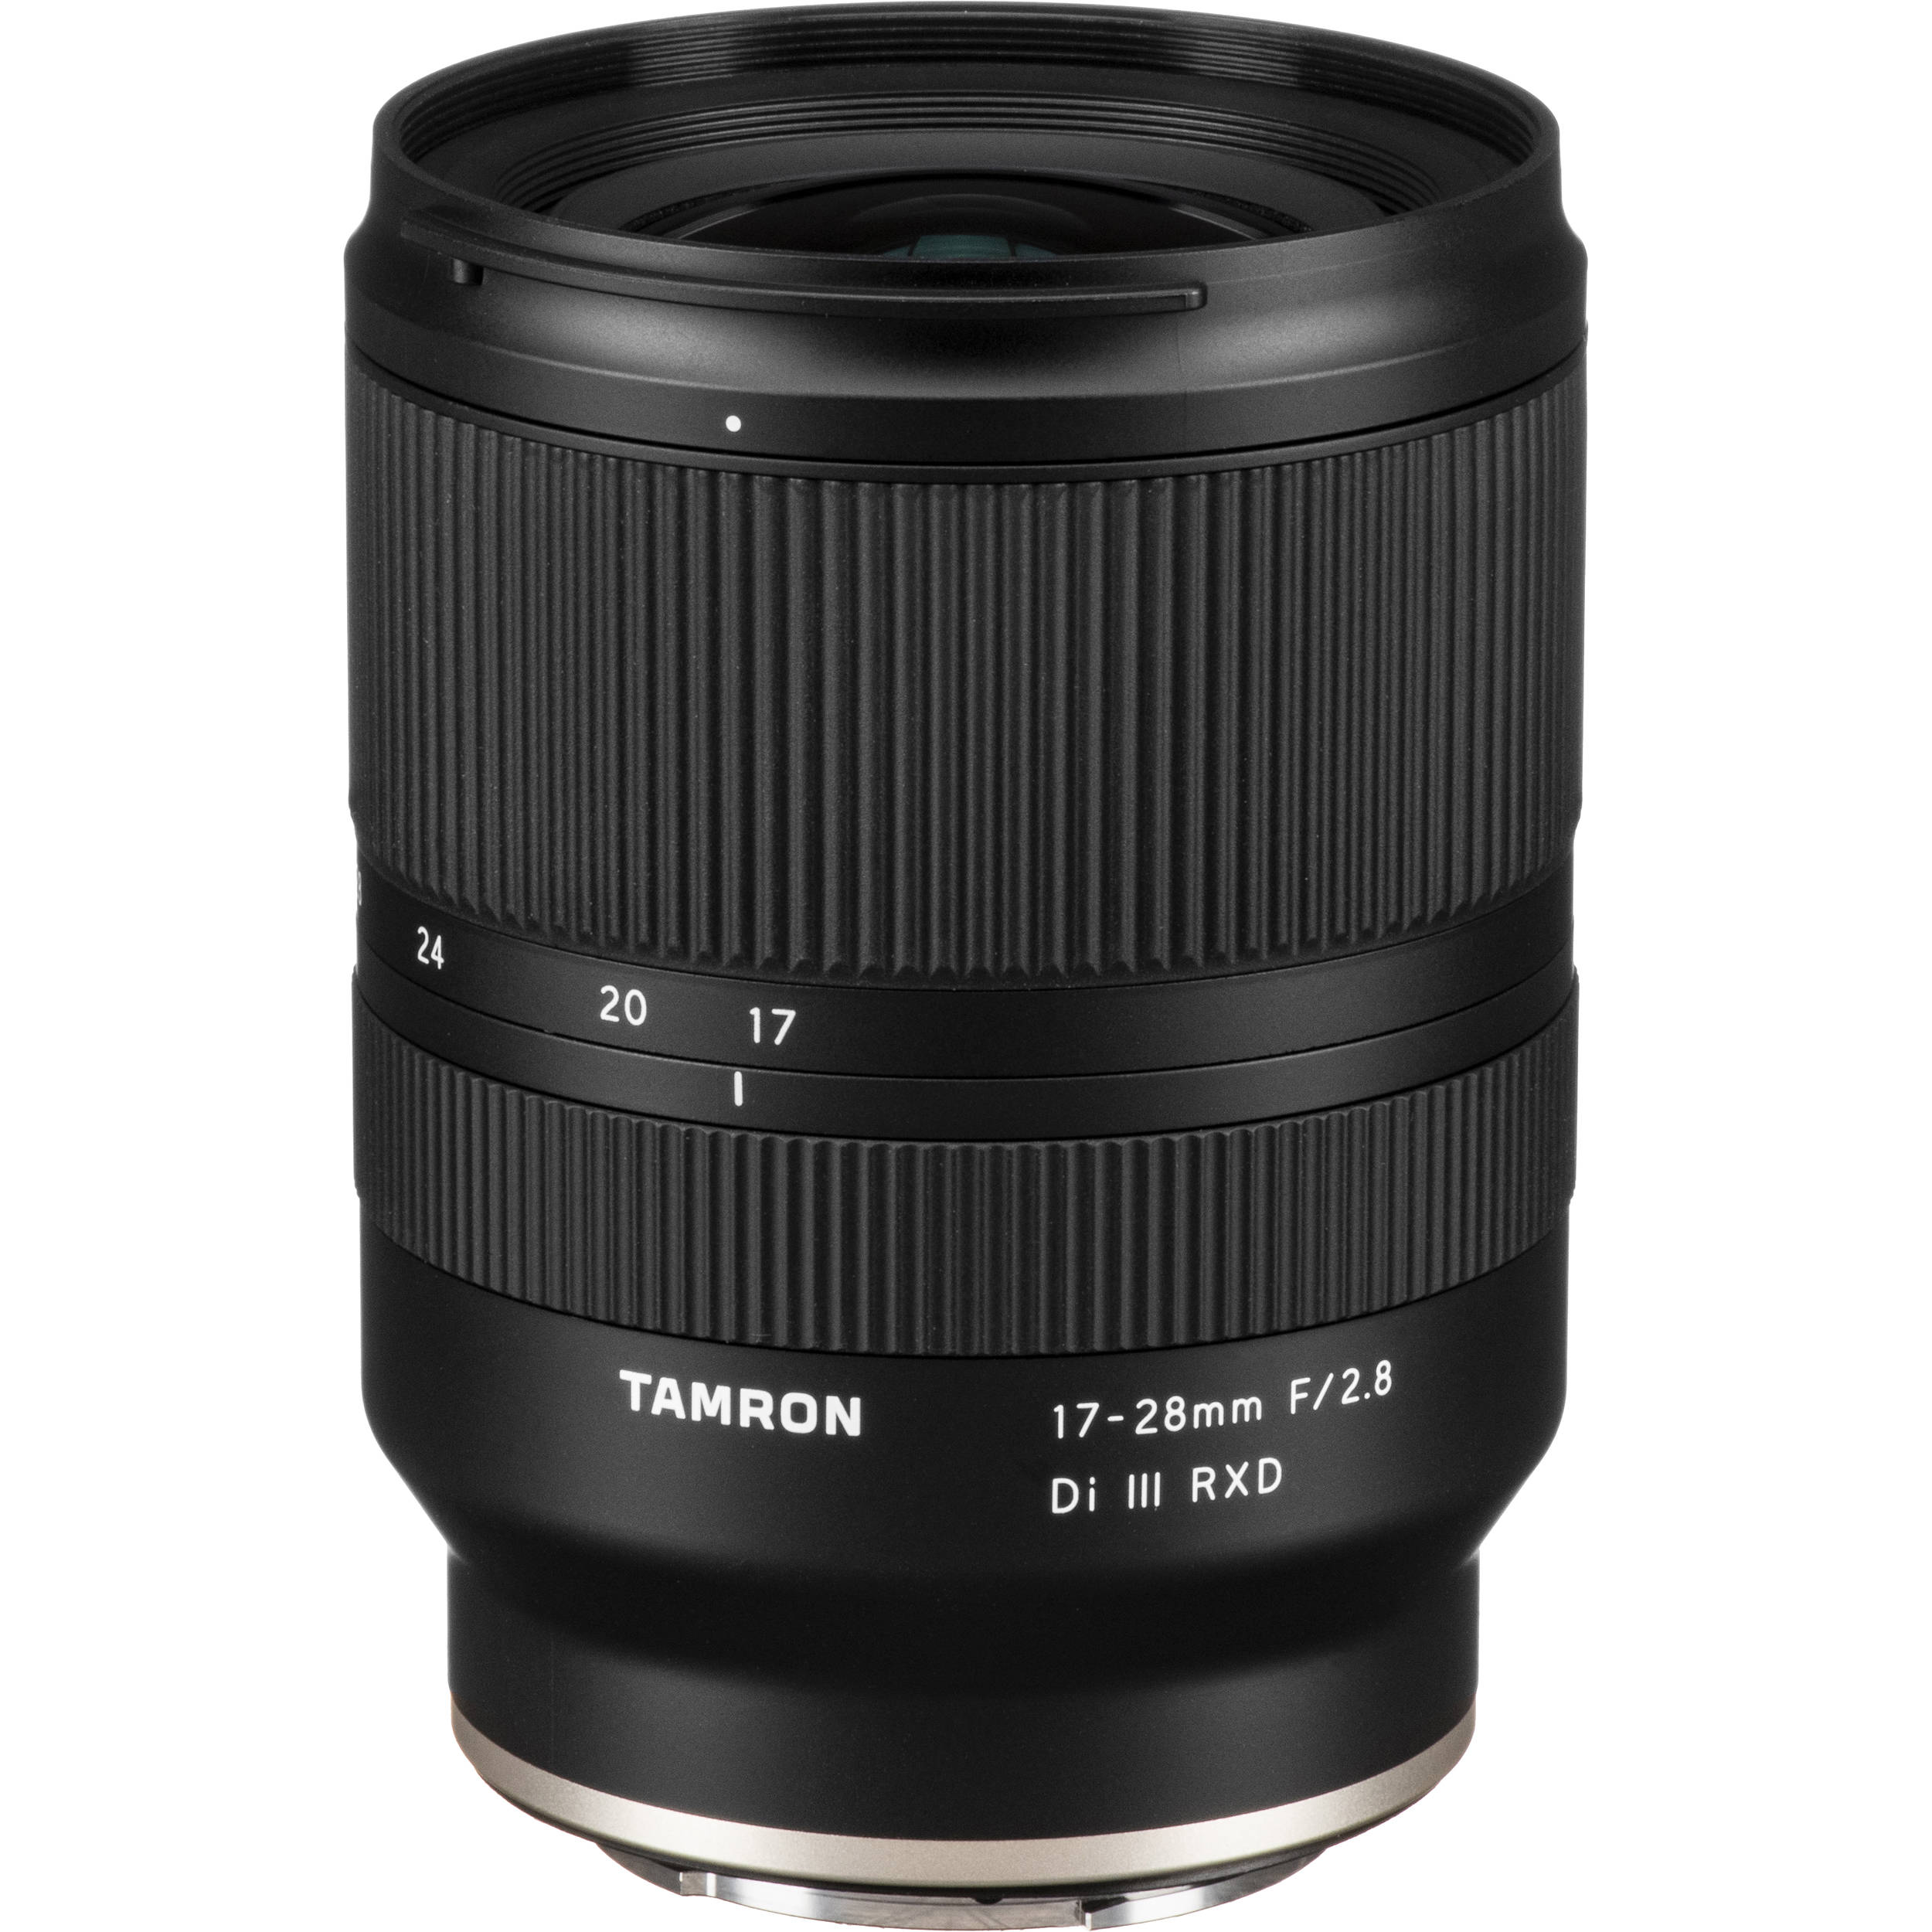 Tamron 17-28mm f/2.8 Di III RXD là chiếc ống kính zoom đa năng cung cấp phạm vi từ góc rộng đến siêu rộng